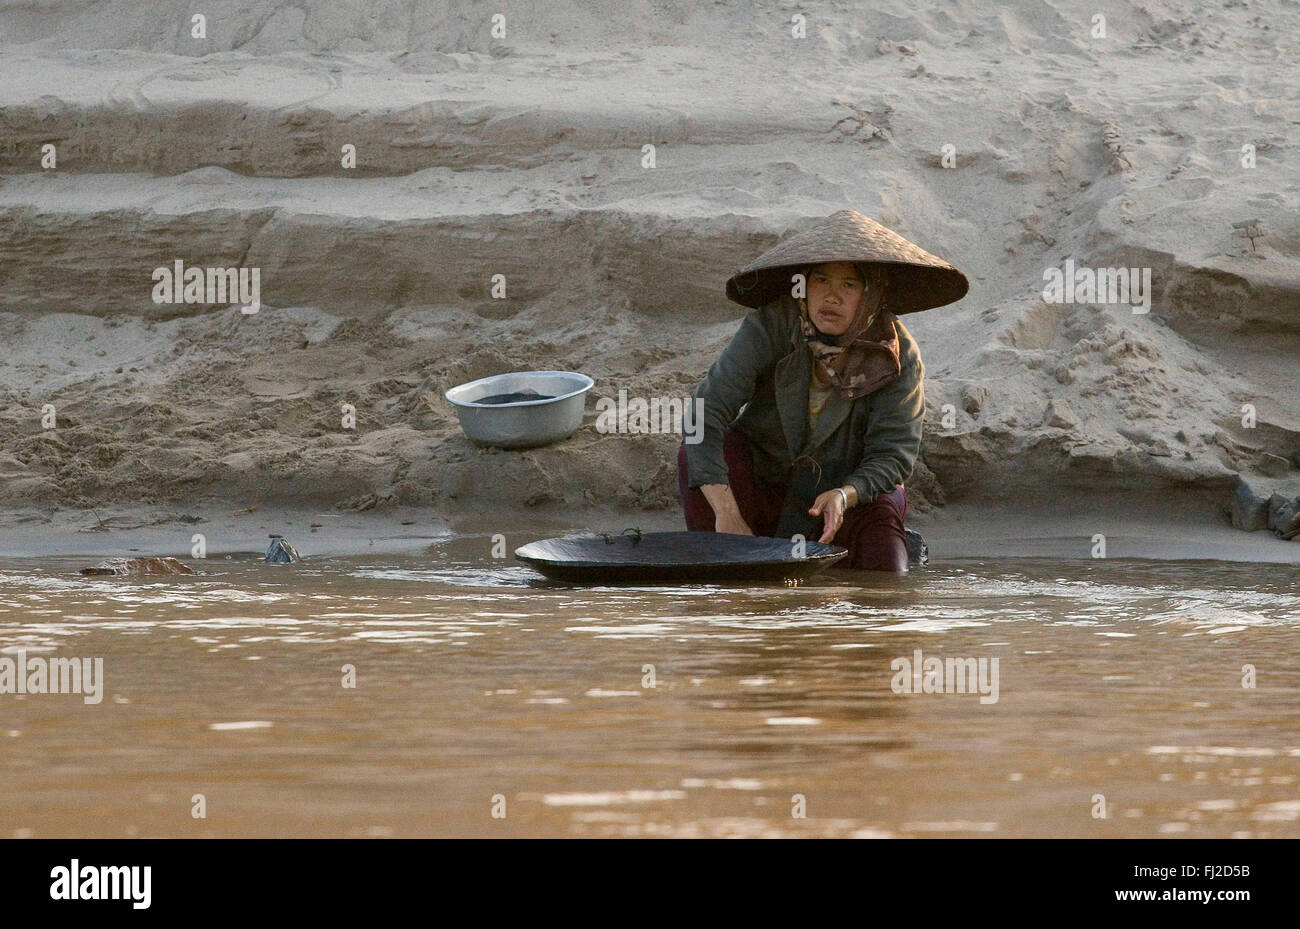 Les femmes laotiennes de l'or sur les rives de la rivière Mékong LUANG - LAOS PROBANG ci-dessus Banque D'Images